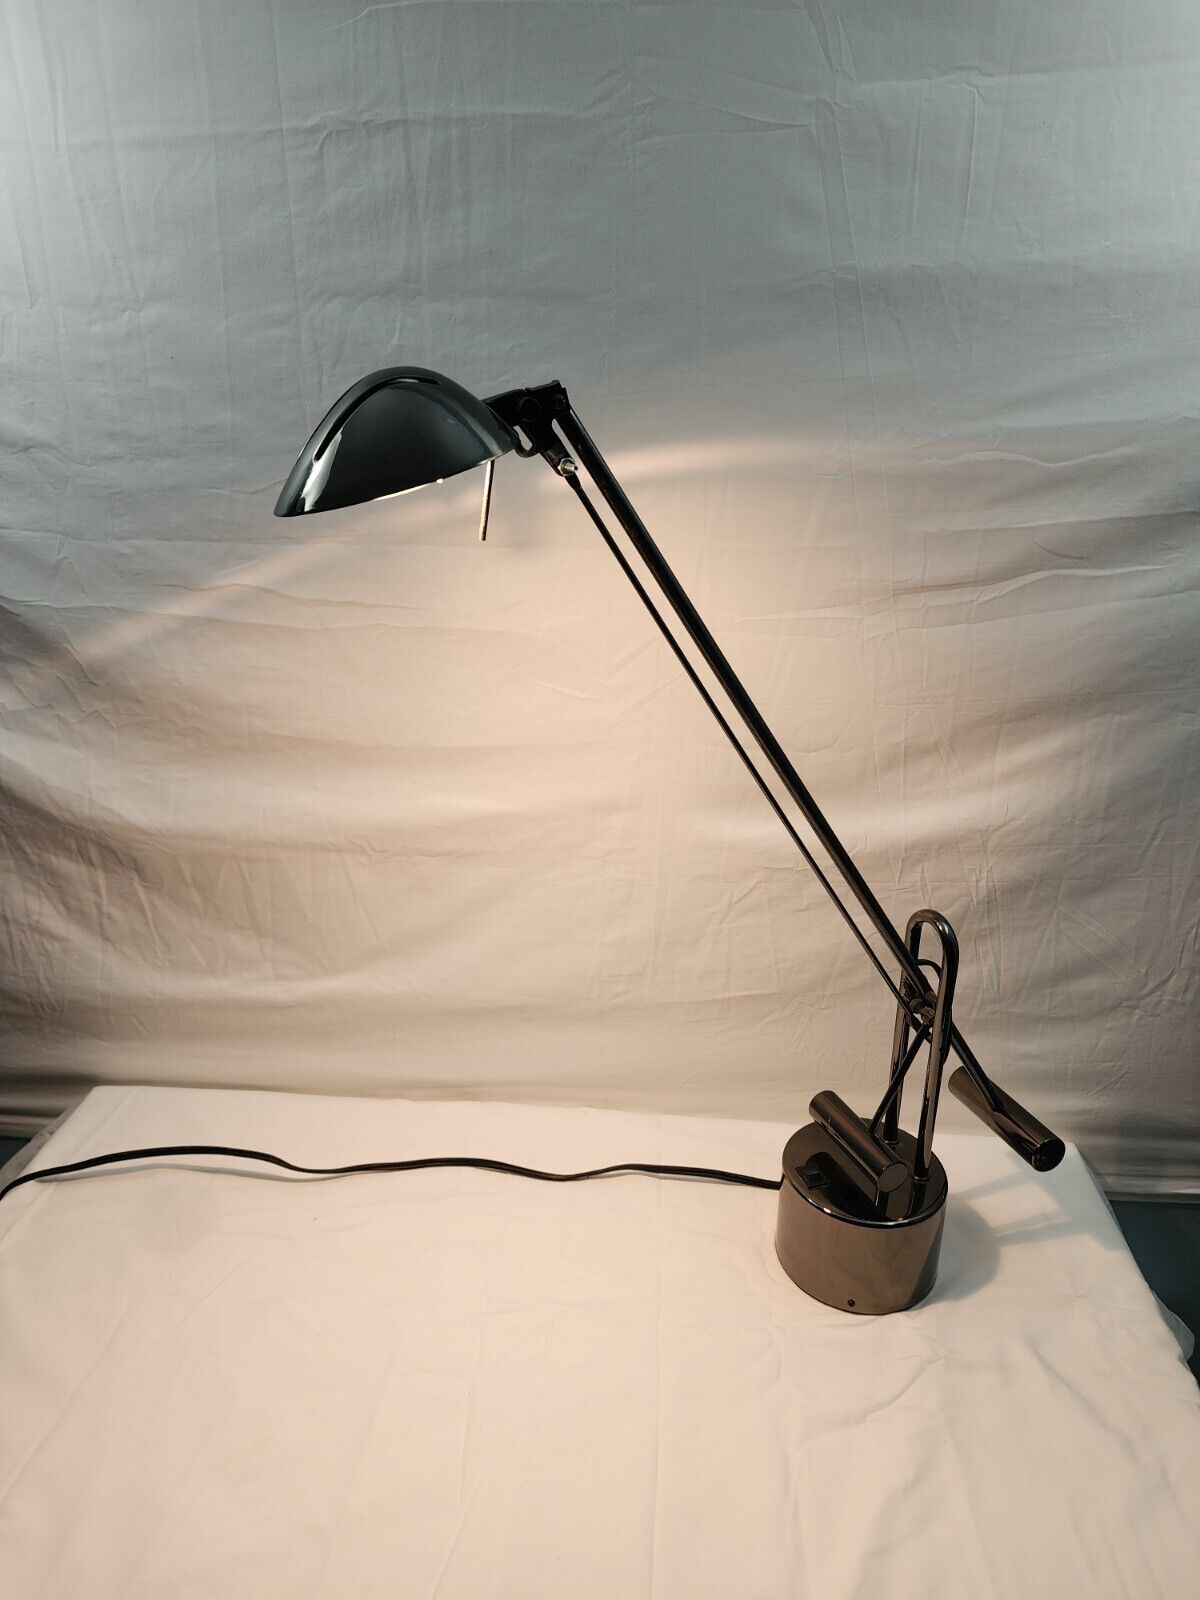 Lite Source LS-306 LED Halogen Lamp Halotech Desk Lamp Black.  Tested